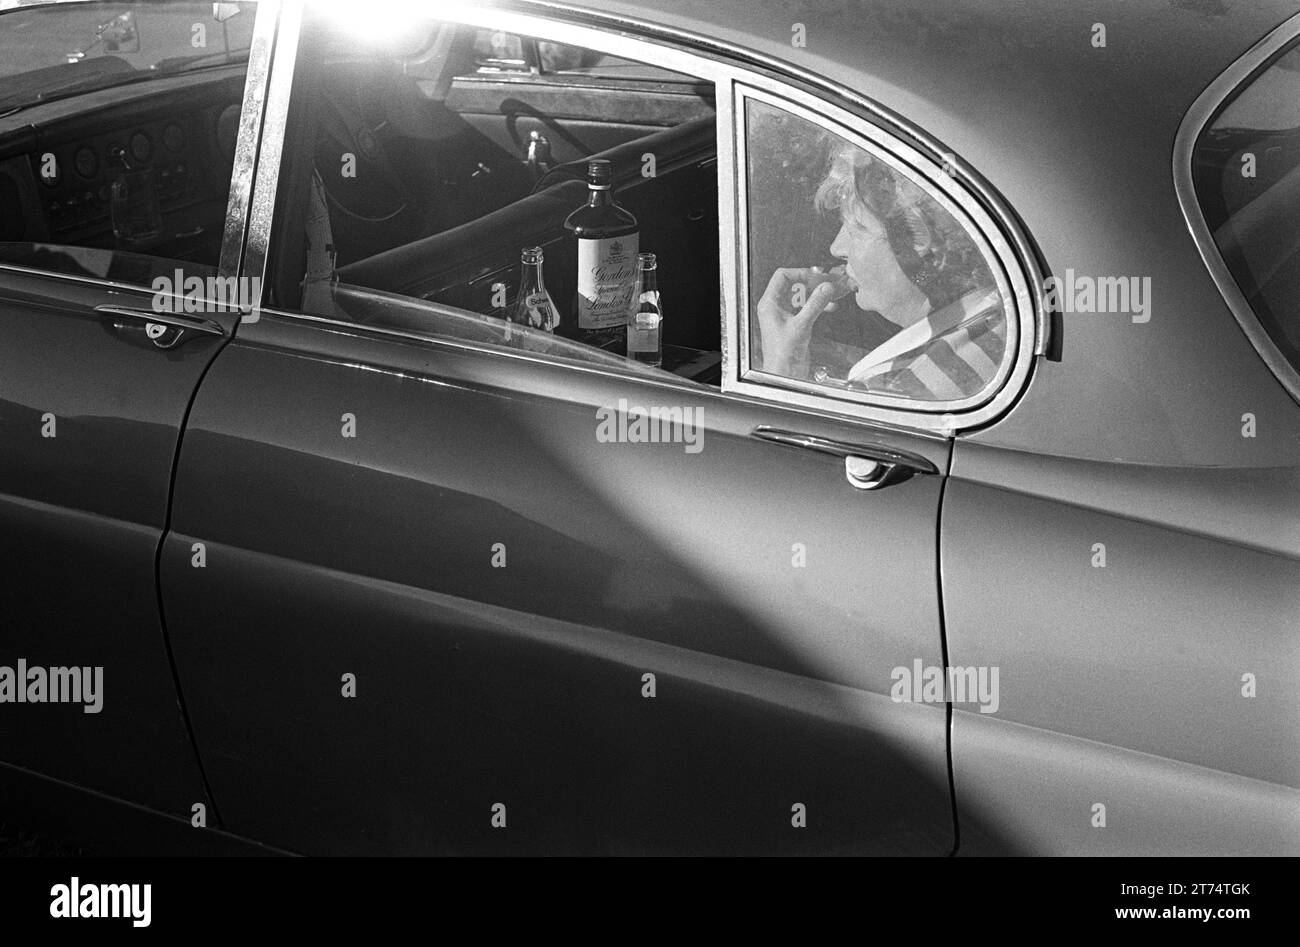 1970s Derby Day Regno Unito. Nel parcheggio e prima della partenza, un pilota può godersi un Gordon's Special Dry London Gin e un tonic e una tazza di torta sul retro della Jaguar. Epsom Downs, Surrey, Inghilterra 3 giugno 1970. HOMER SYKES. Foto Stock